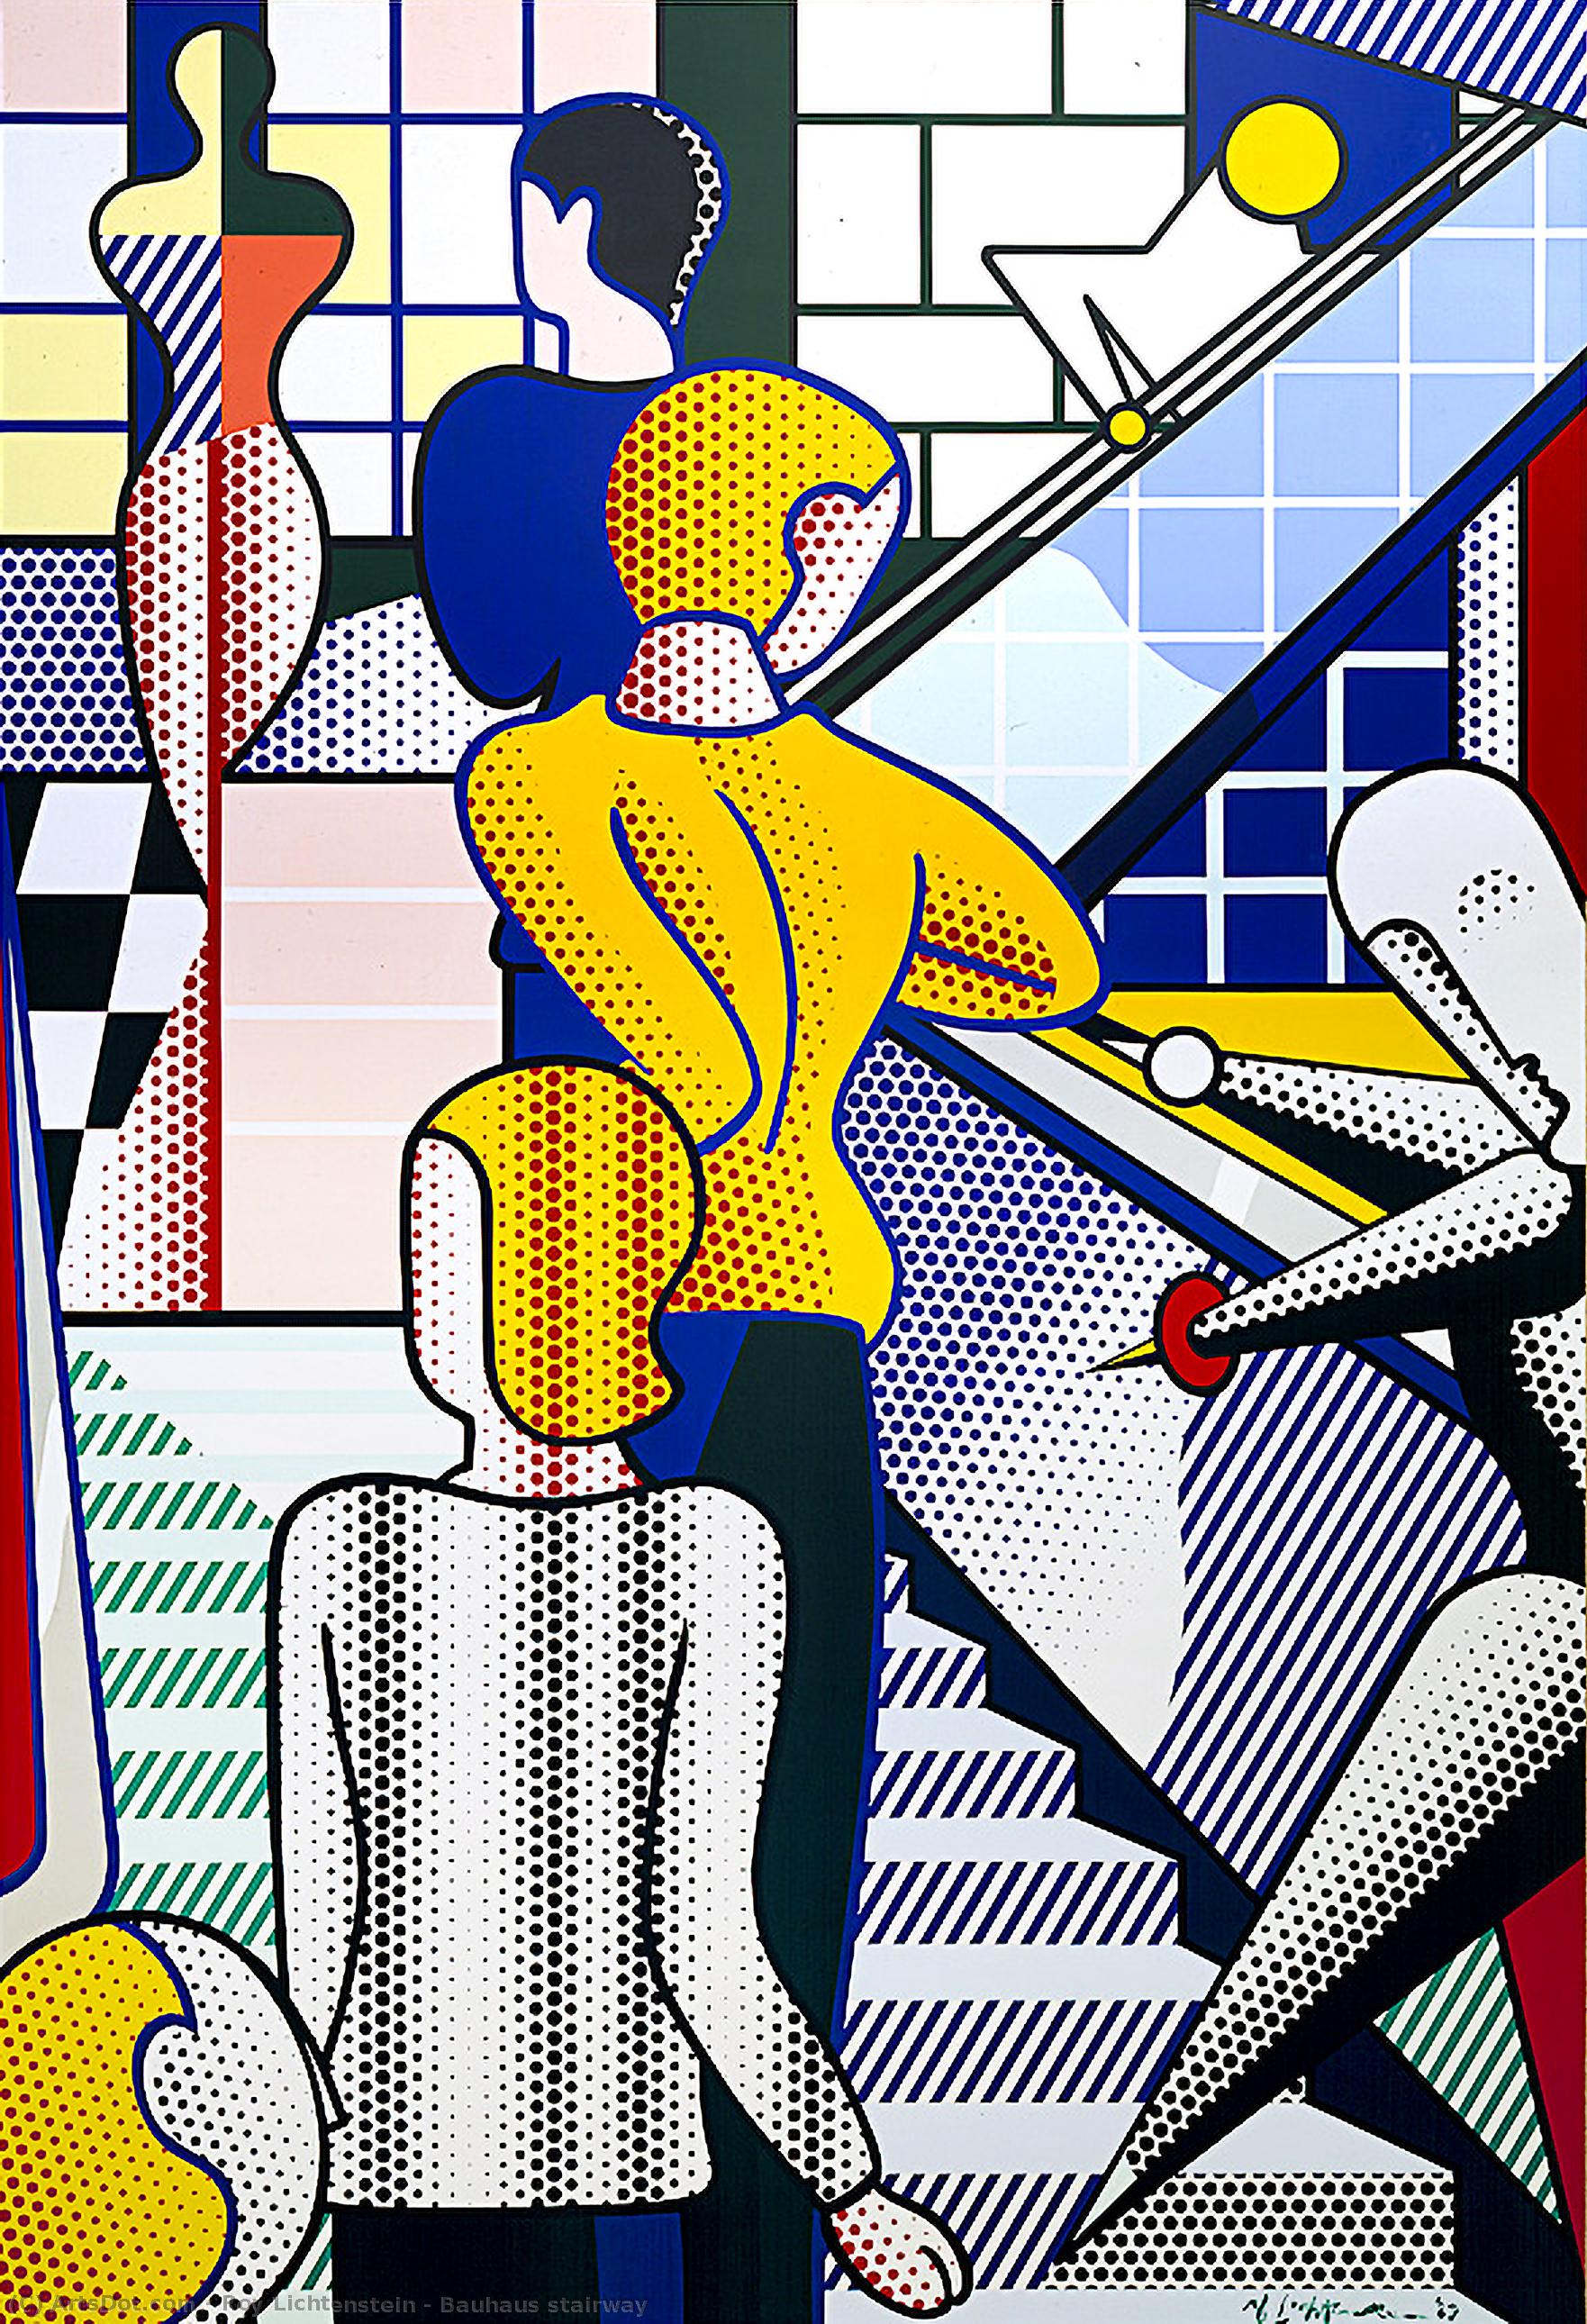 Wikioo.org - Bách khoa toàn thư về mỹ thuật - Vẽ tranh, Tác phẩm nghệ thuật Roy Lichtenstein - Bauhaus stairway